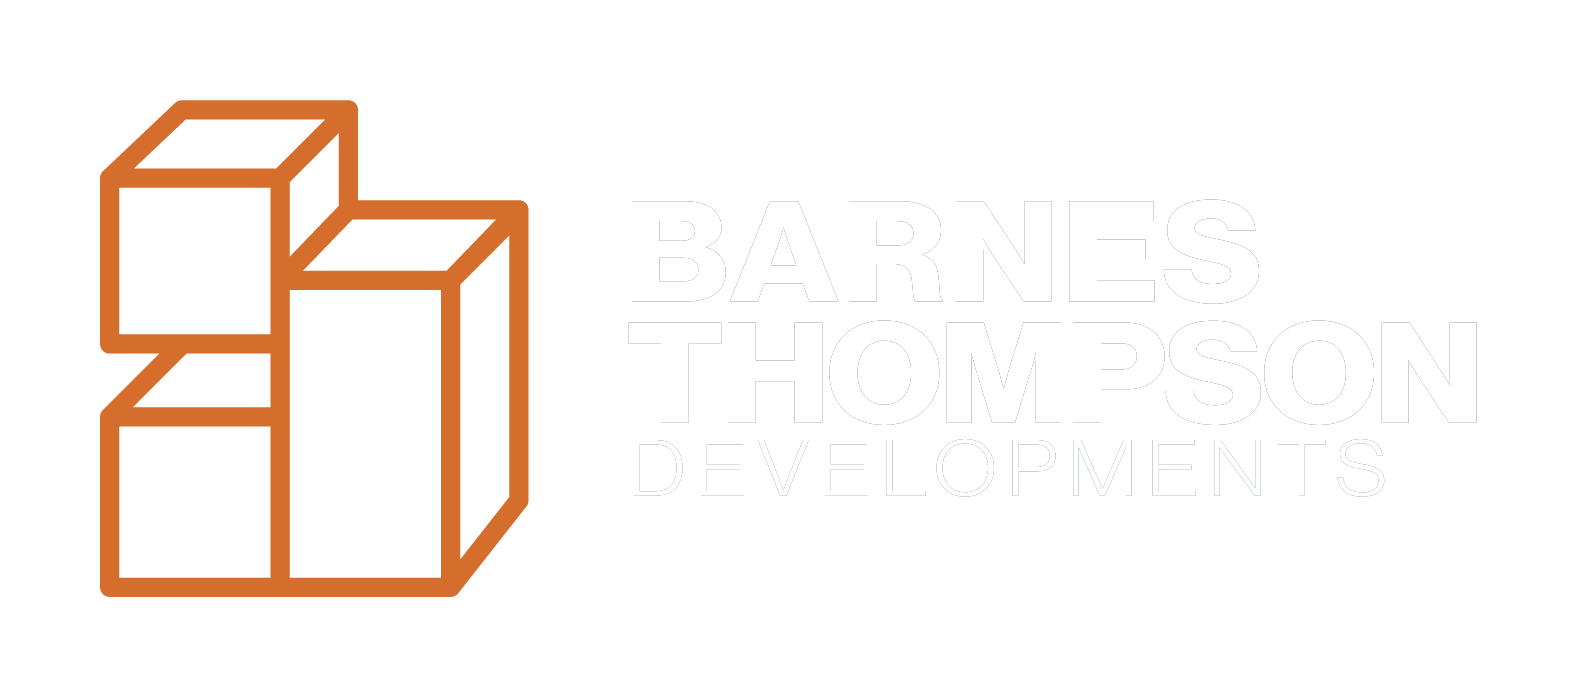 Barnes Thompson logo - white